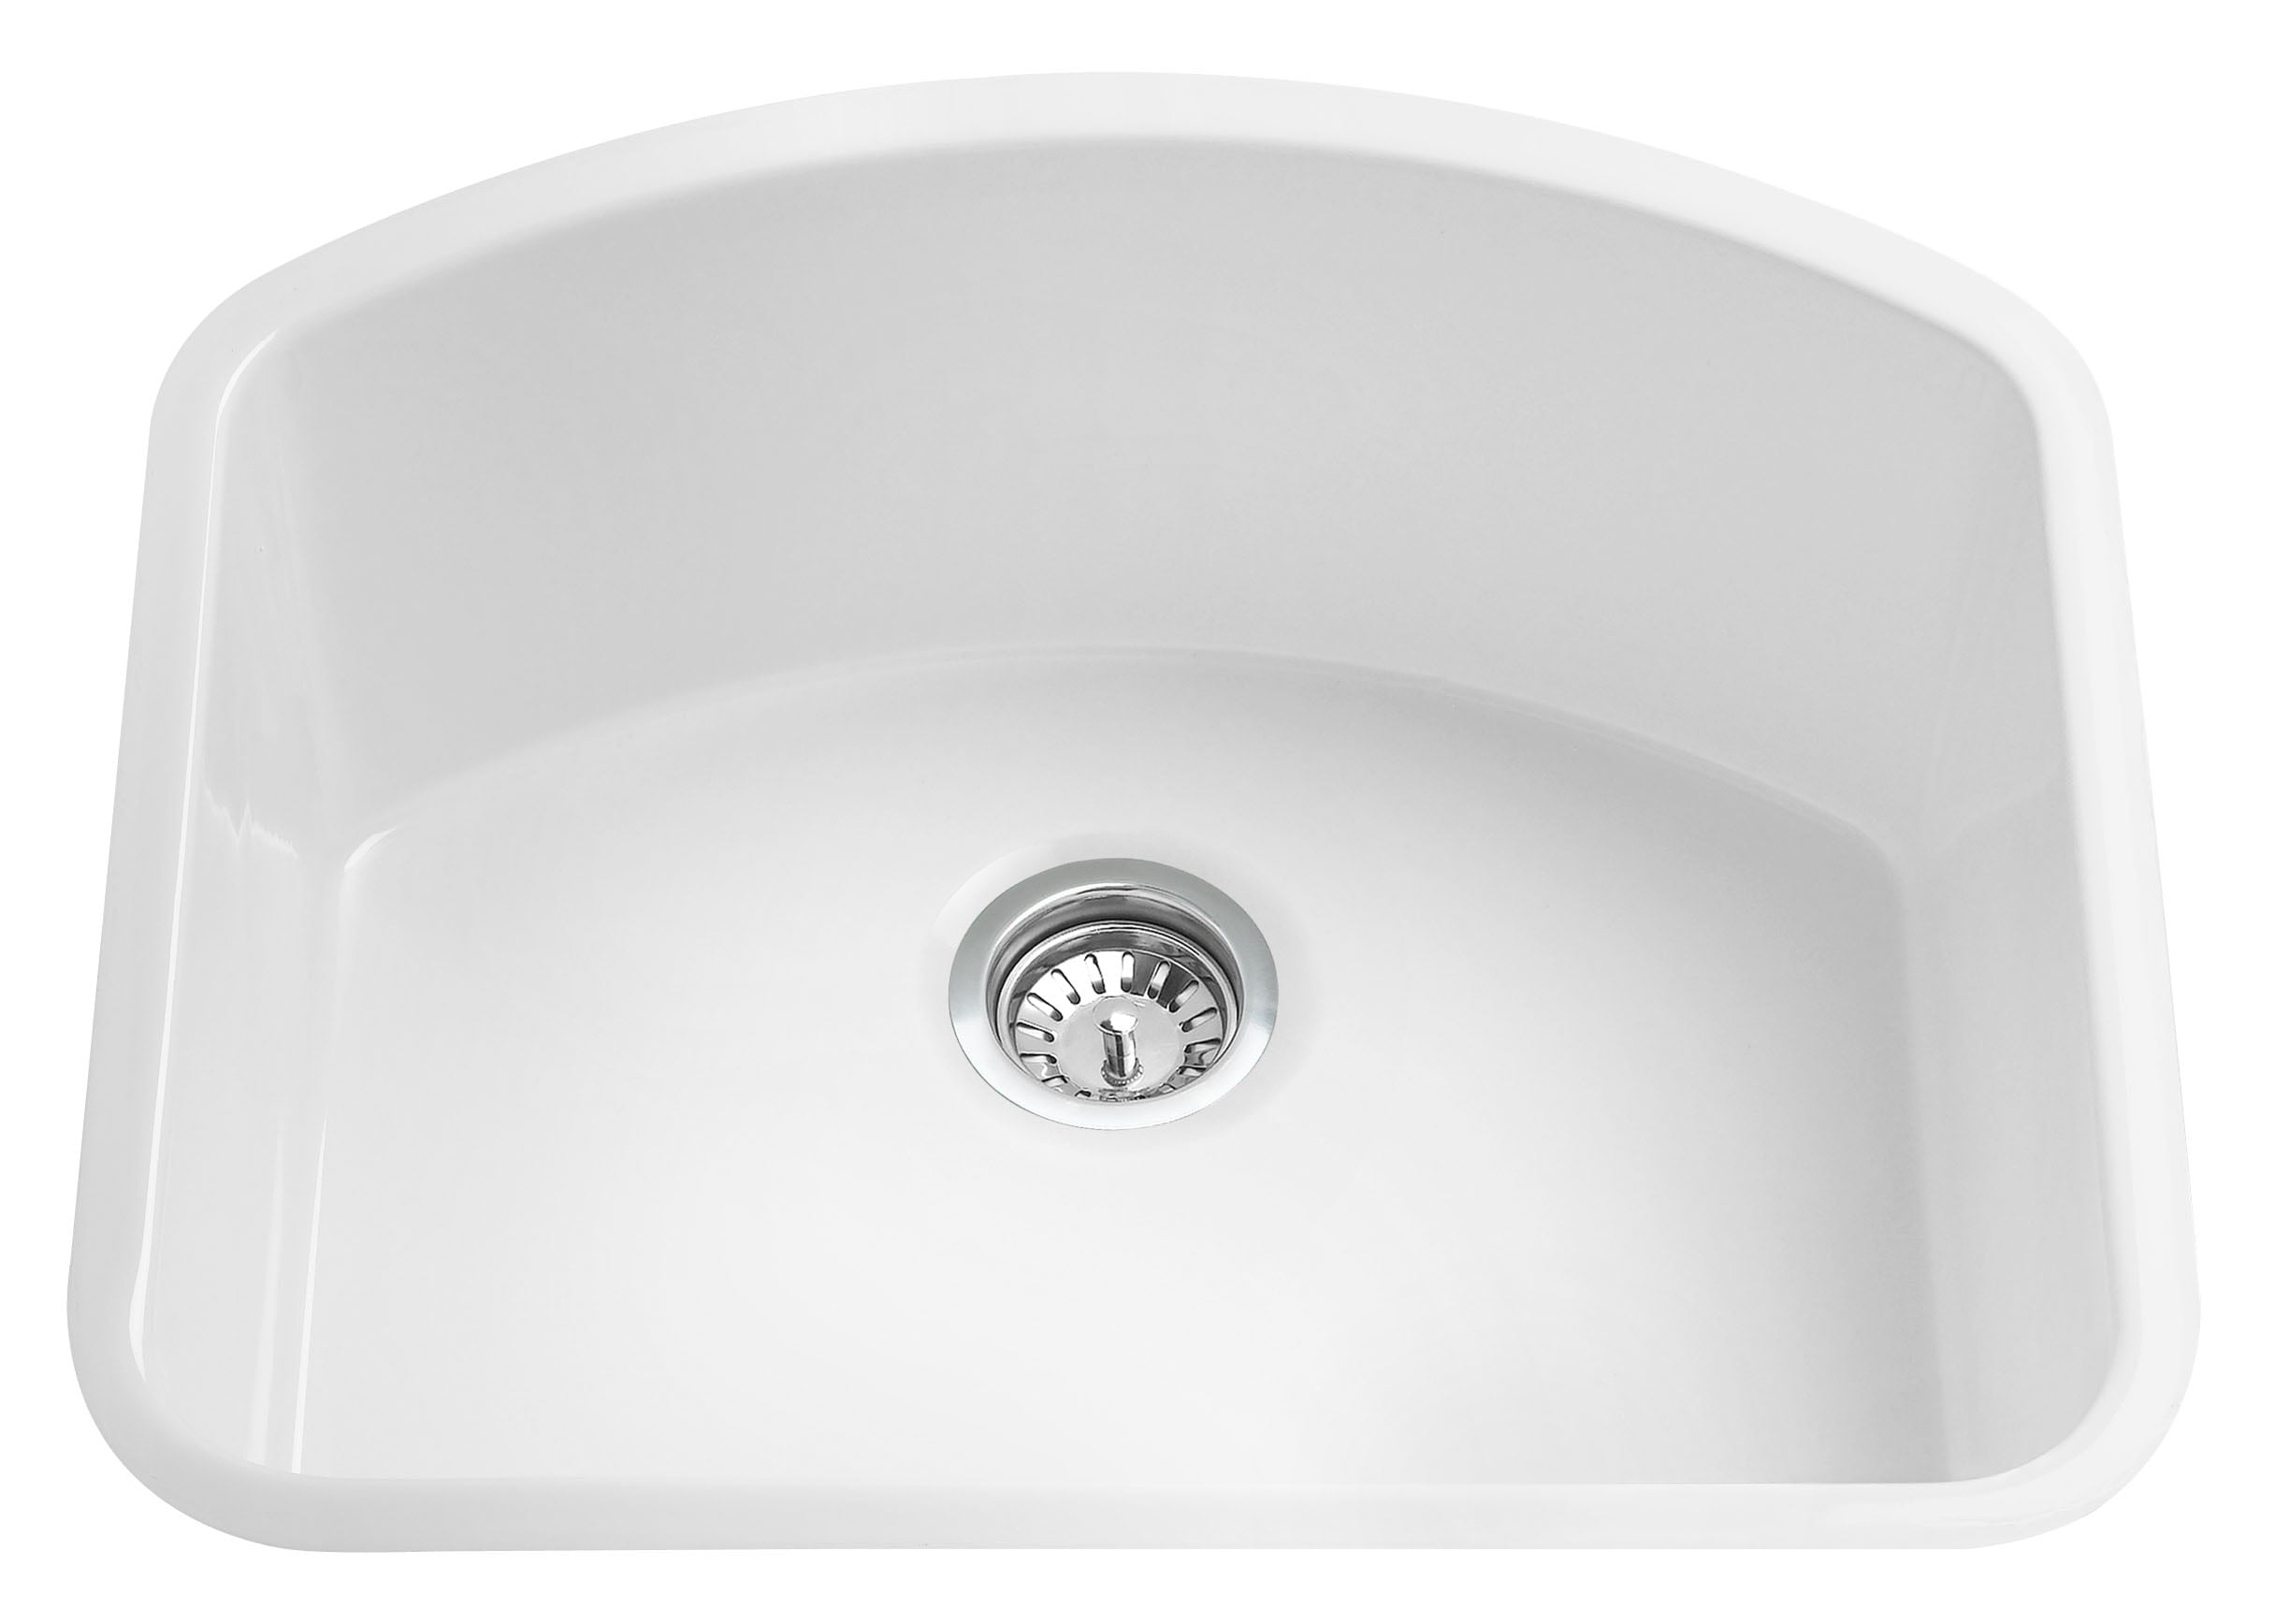 white glazed fireclay kitchen sink